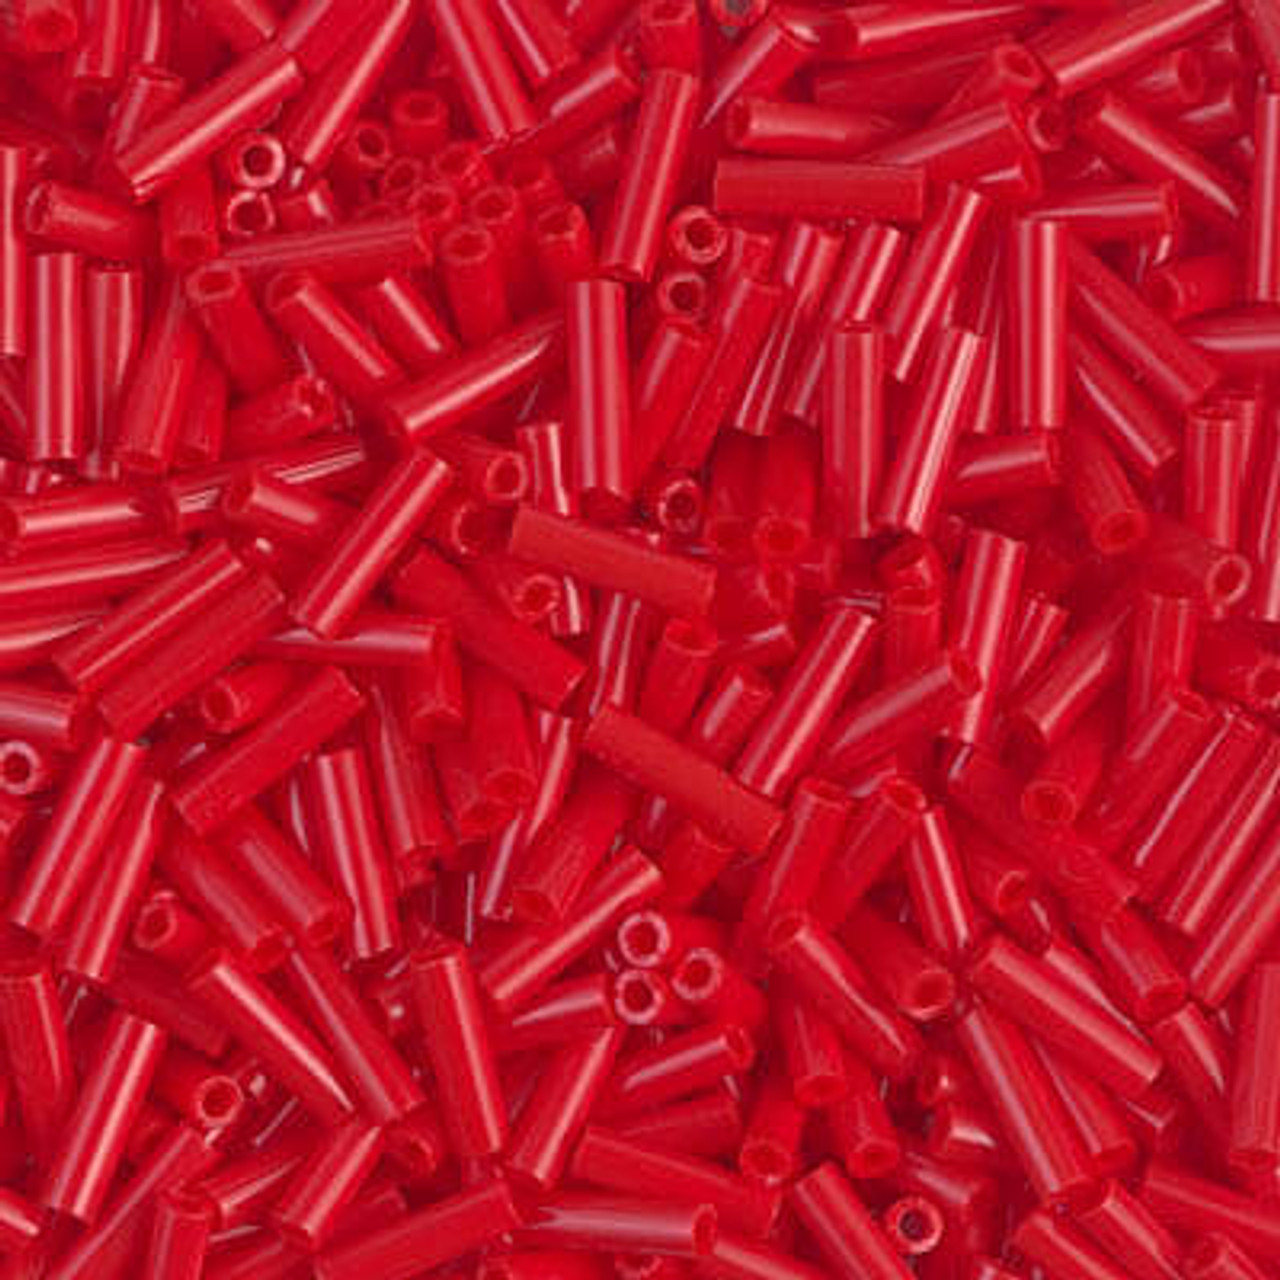 Red Metallic Bingsu Beads – SBN Craft Supplies